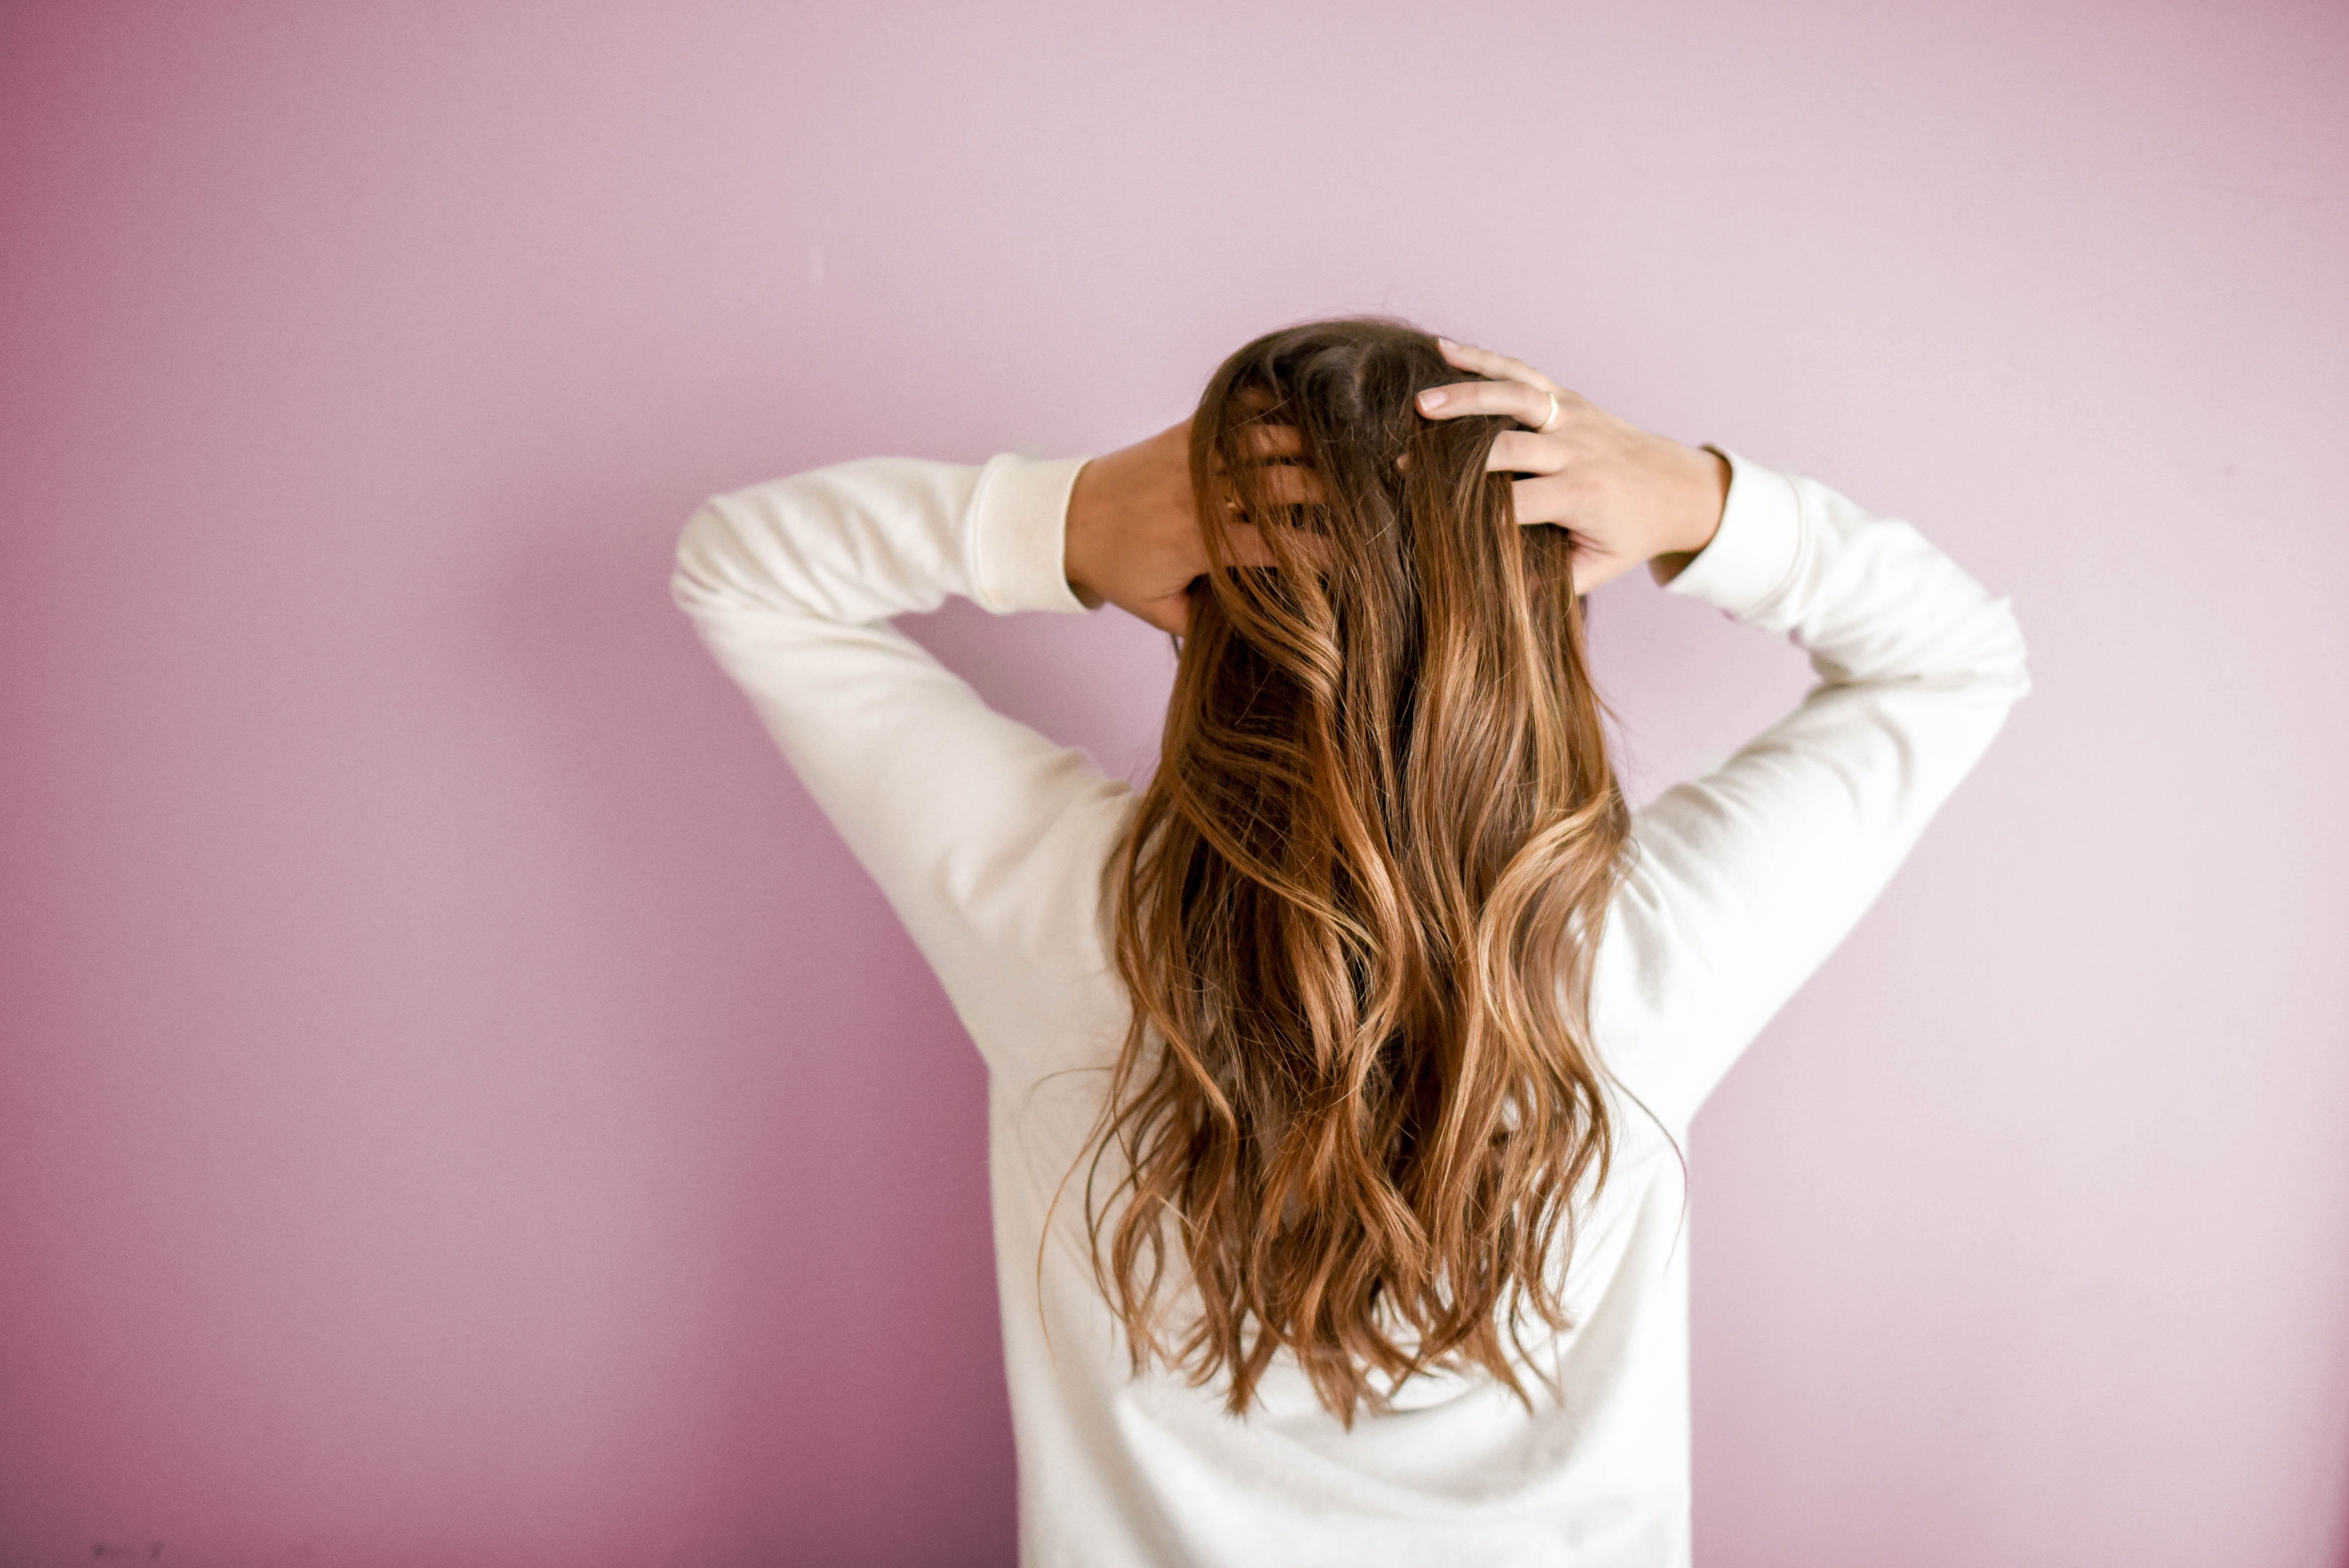 Ламкие волосы могут испортить прическу